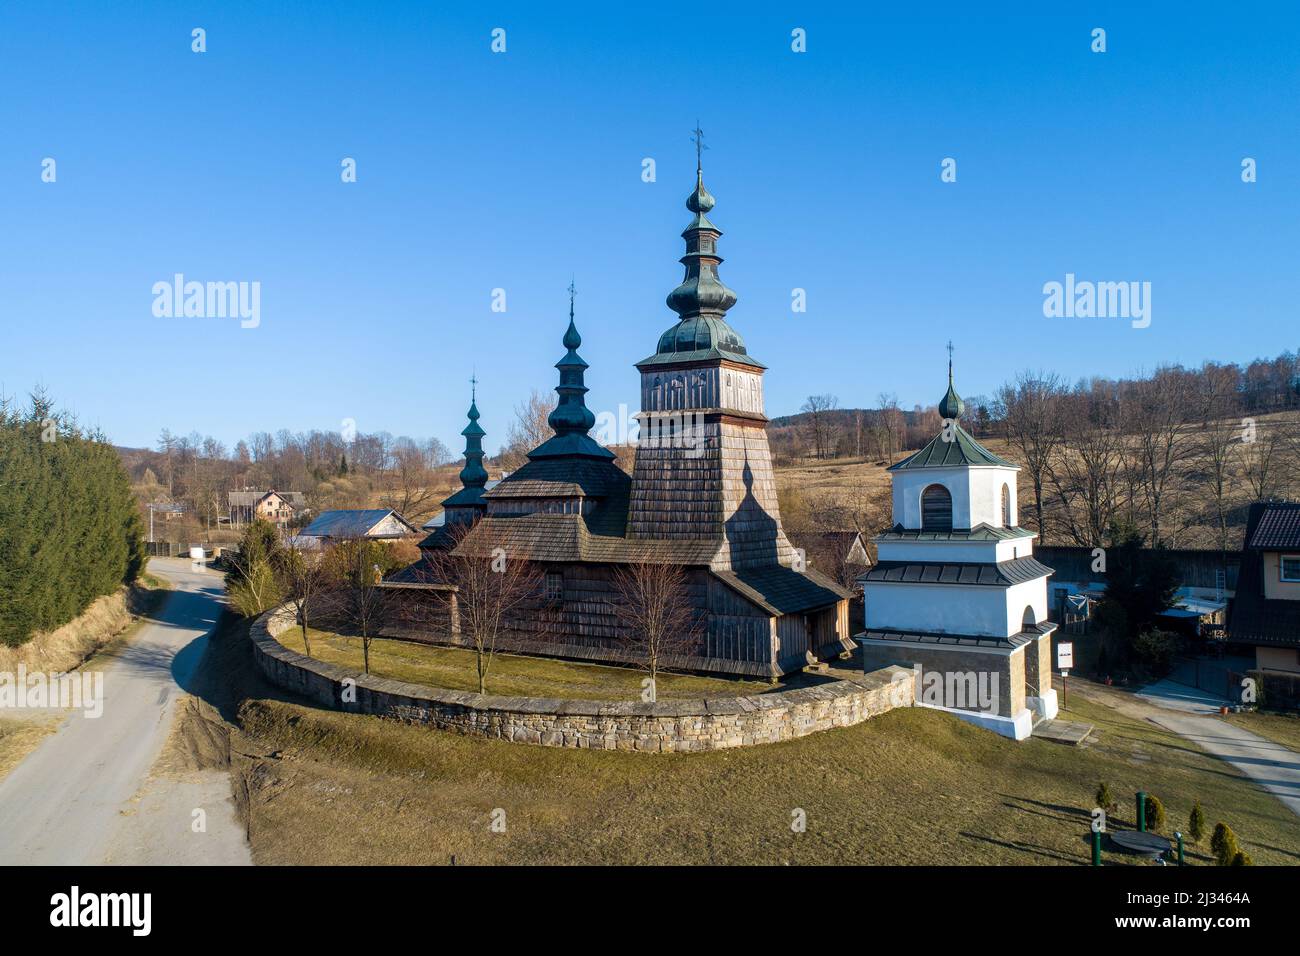 Alte orthodoxe Kirche in Owczary, Polen. Erbaut im 17.. Jahrhundert. Jetzt sowohl als römisch-katholische und griechisch-katholische Kirche verwendet. UNESCO-Weltkulturerbe Stockfoto